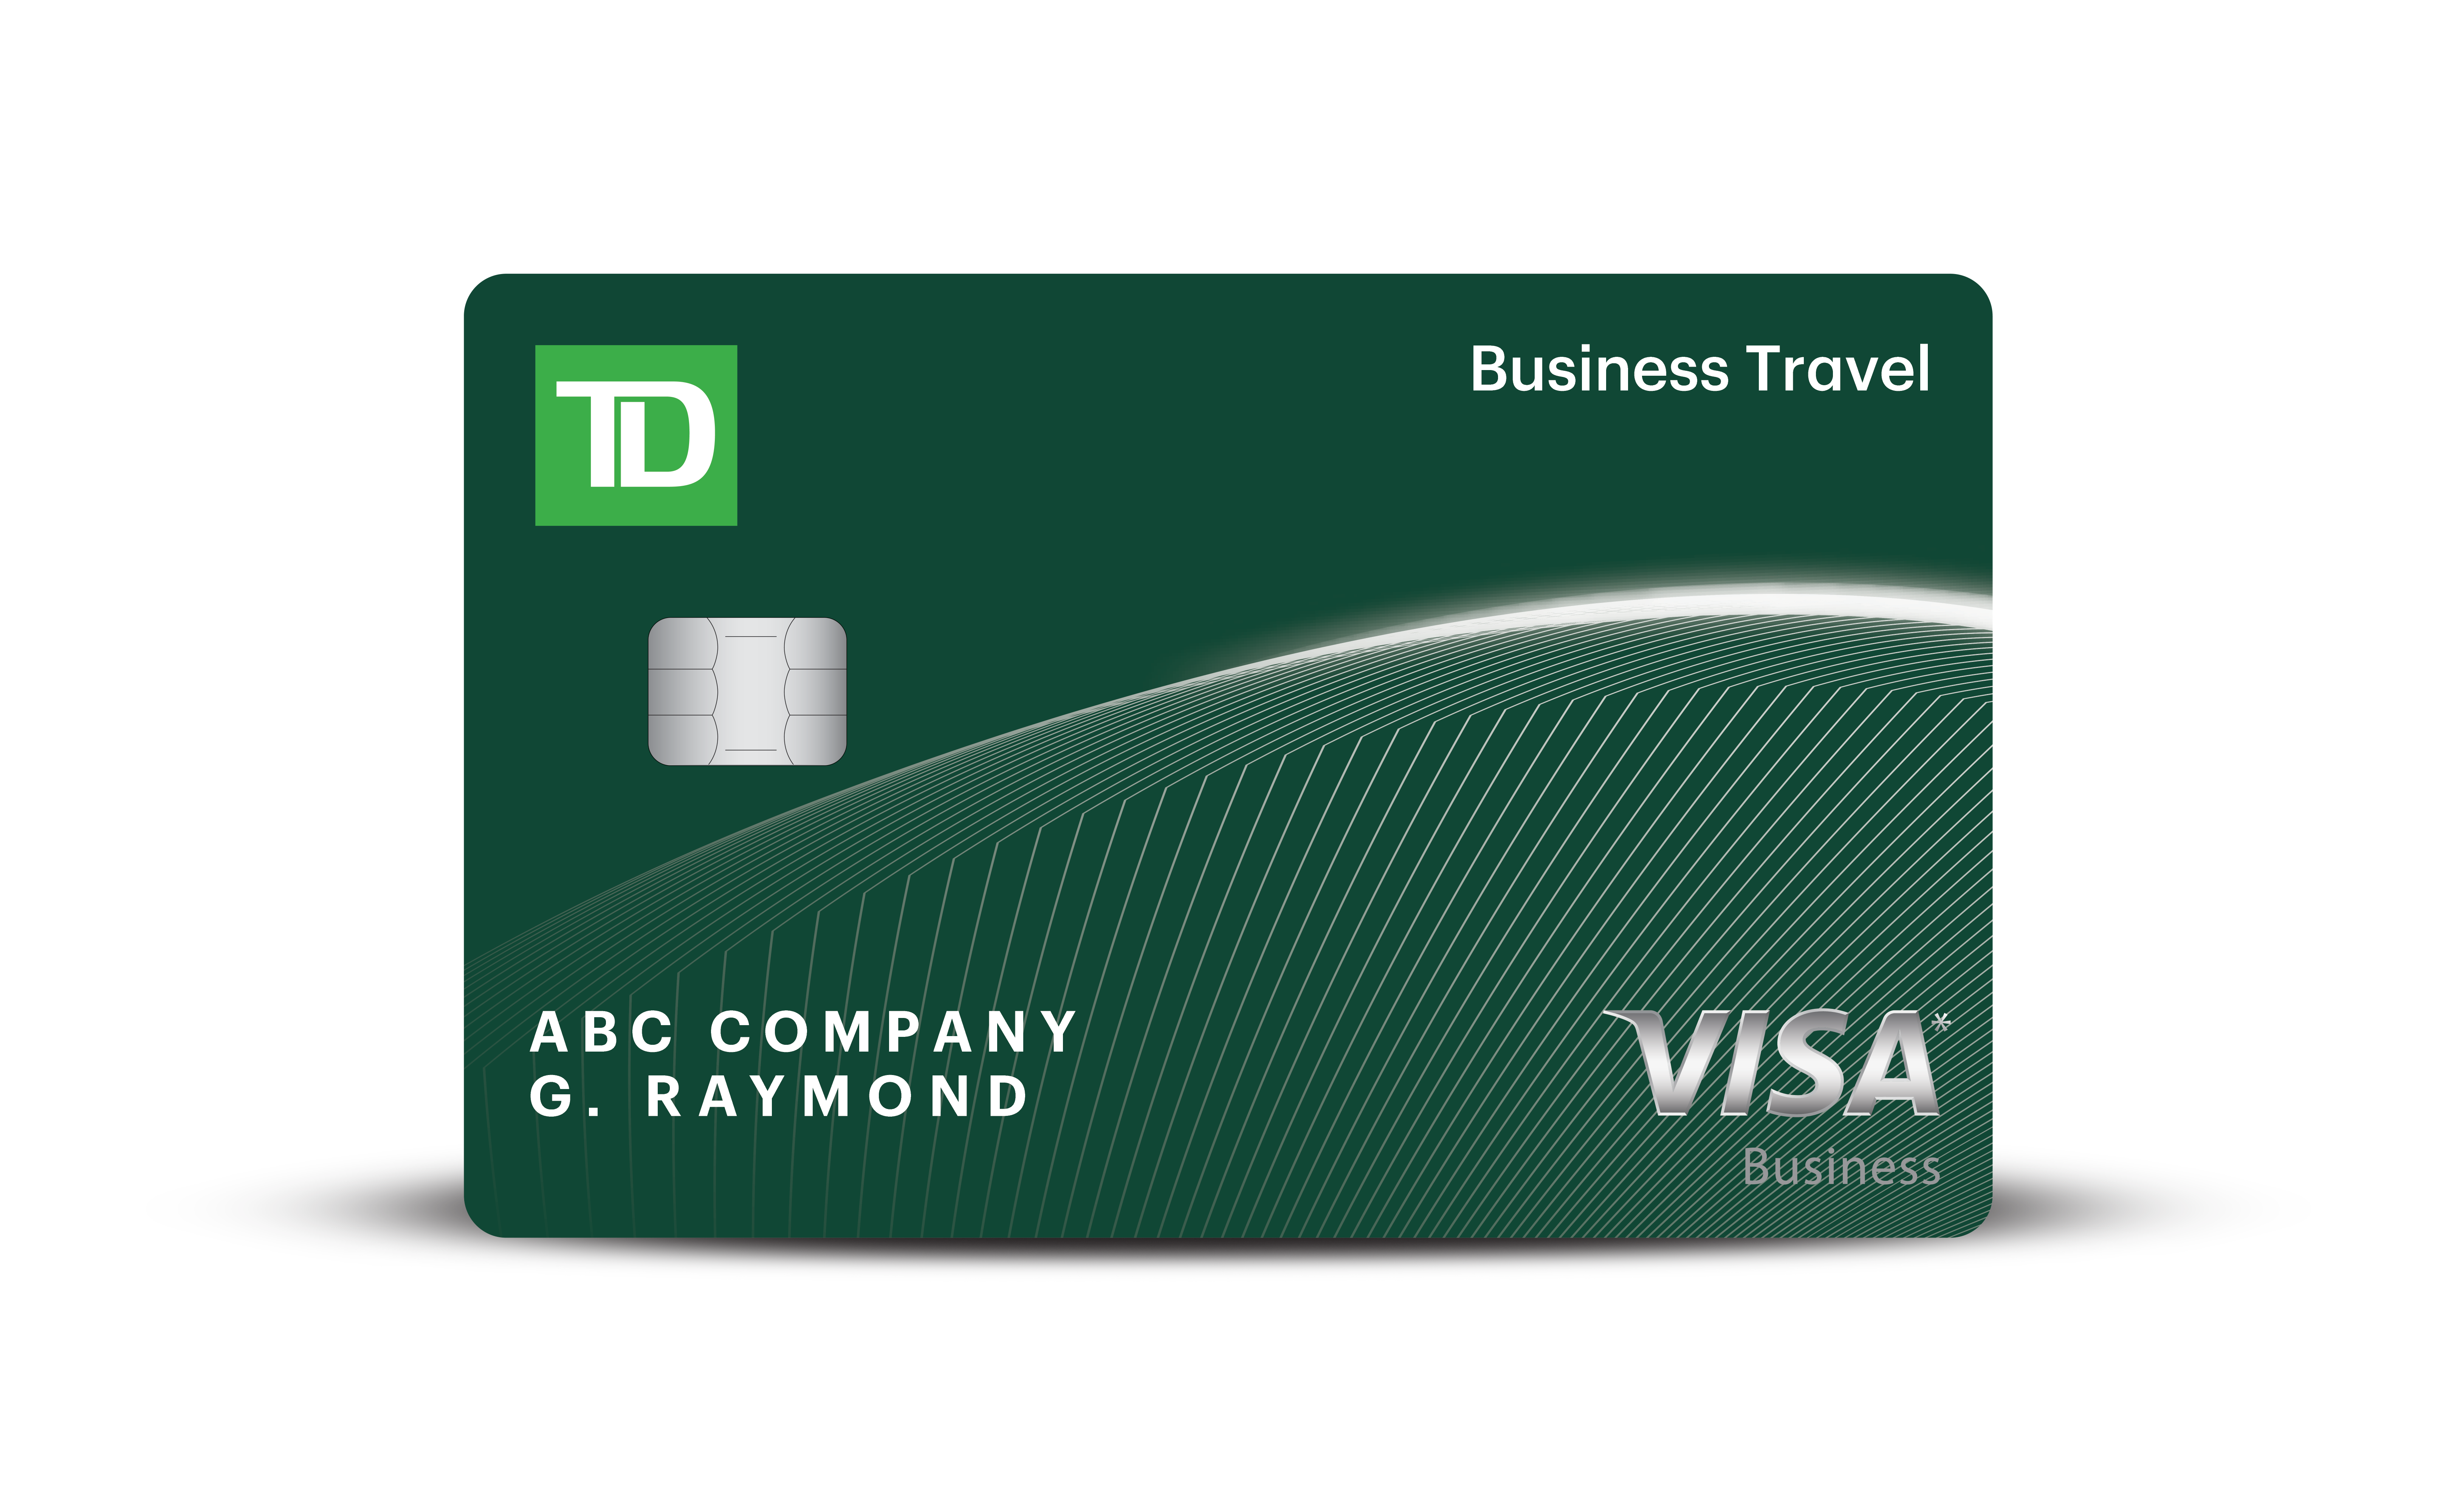 td business travel visa points redemption